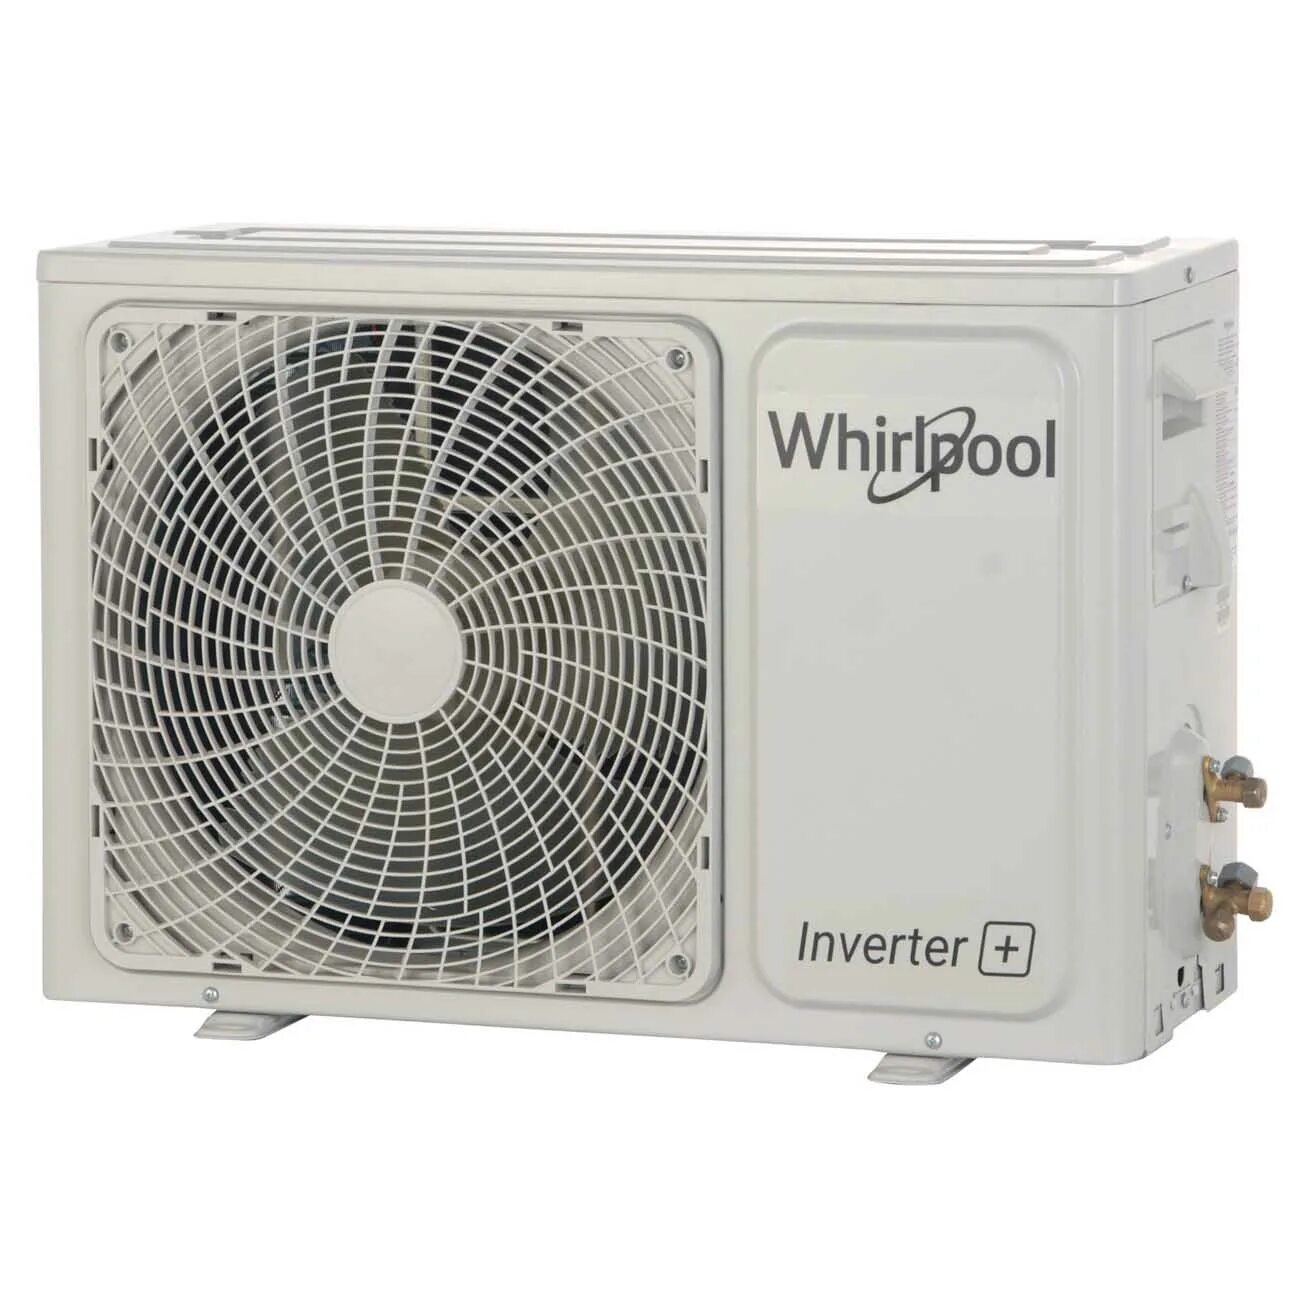 Сплит-система (инвертор) Whirlpool whi412lb. Вирпул whi49. Кондиционер Вирпул whi49lb. Сплит-система Whirlpool who49lb.